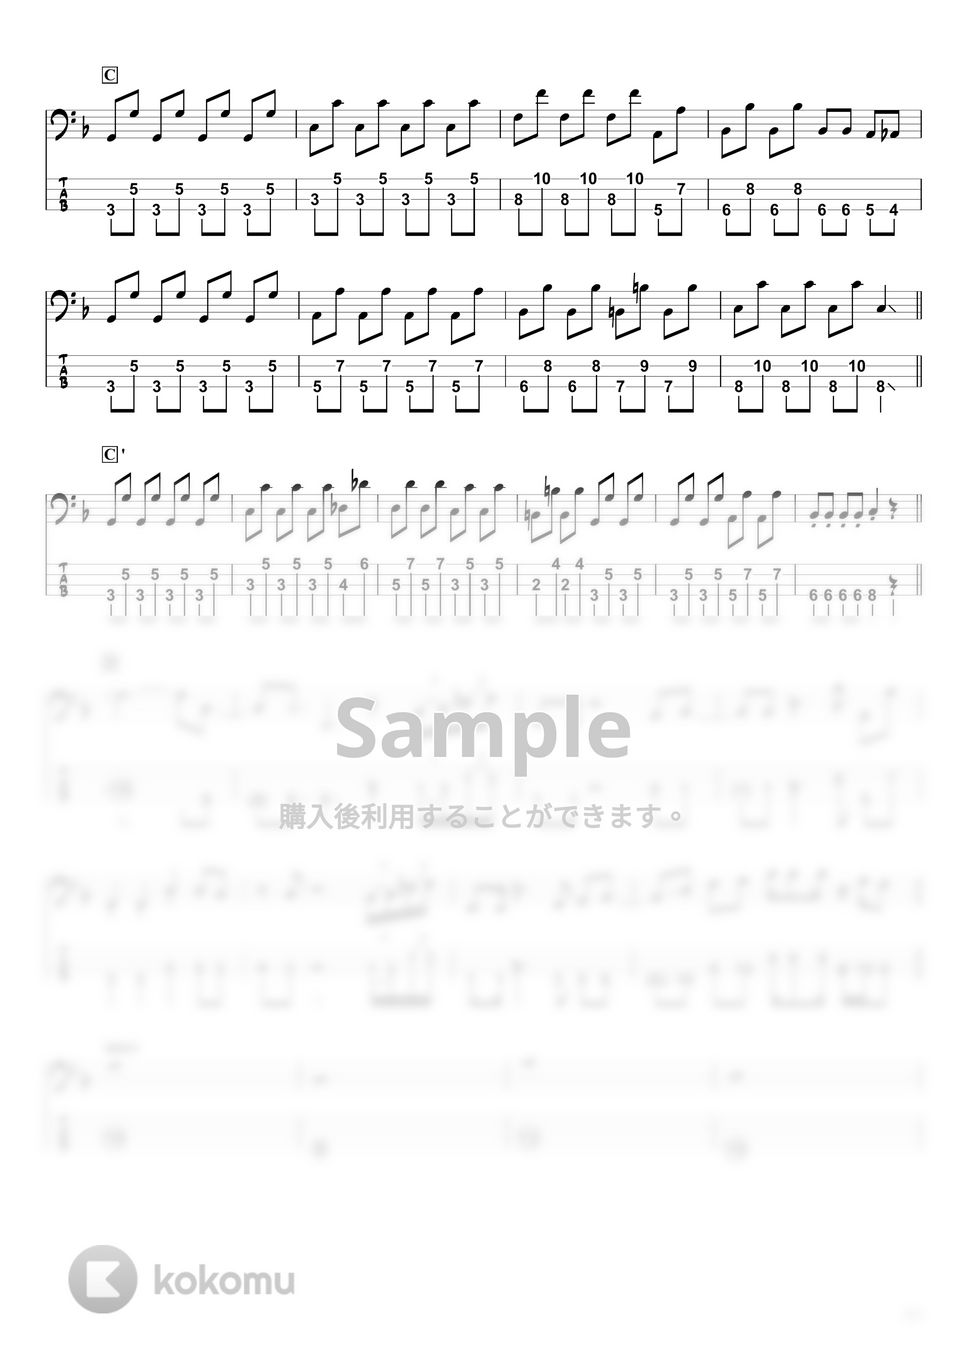 ハマいく - ビート DE トーヒ (ベースTAB譜☆4弦ベース対応) by swbass